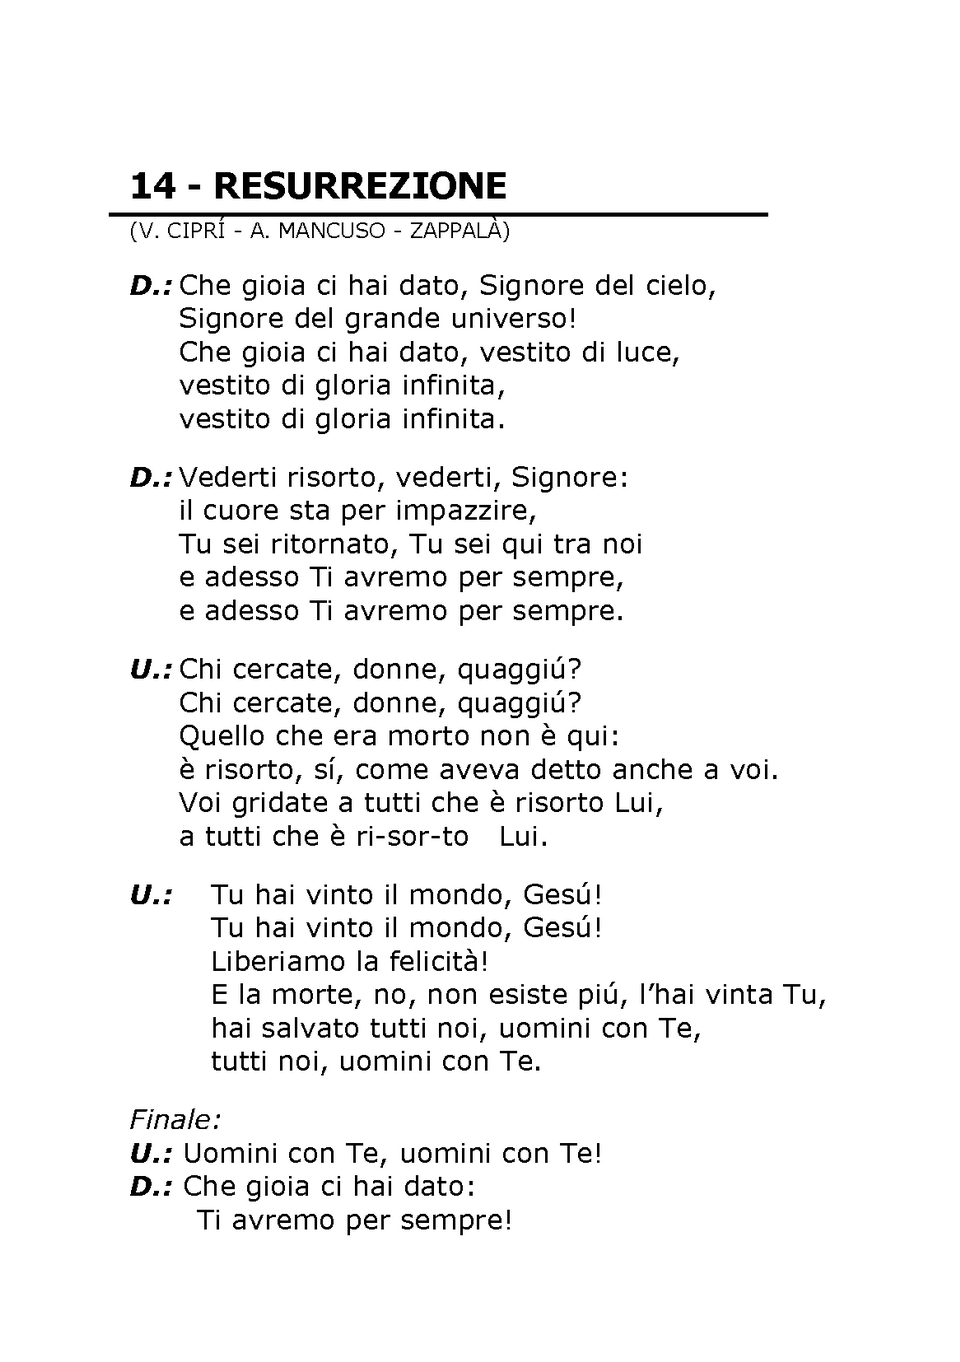 Canto 14